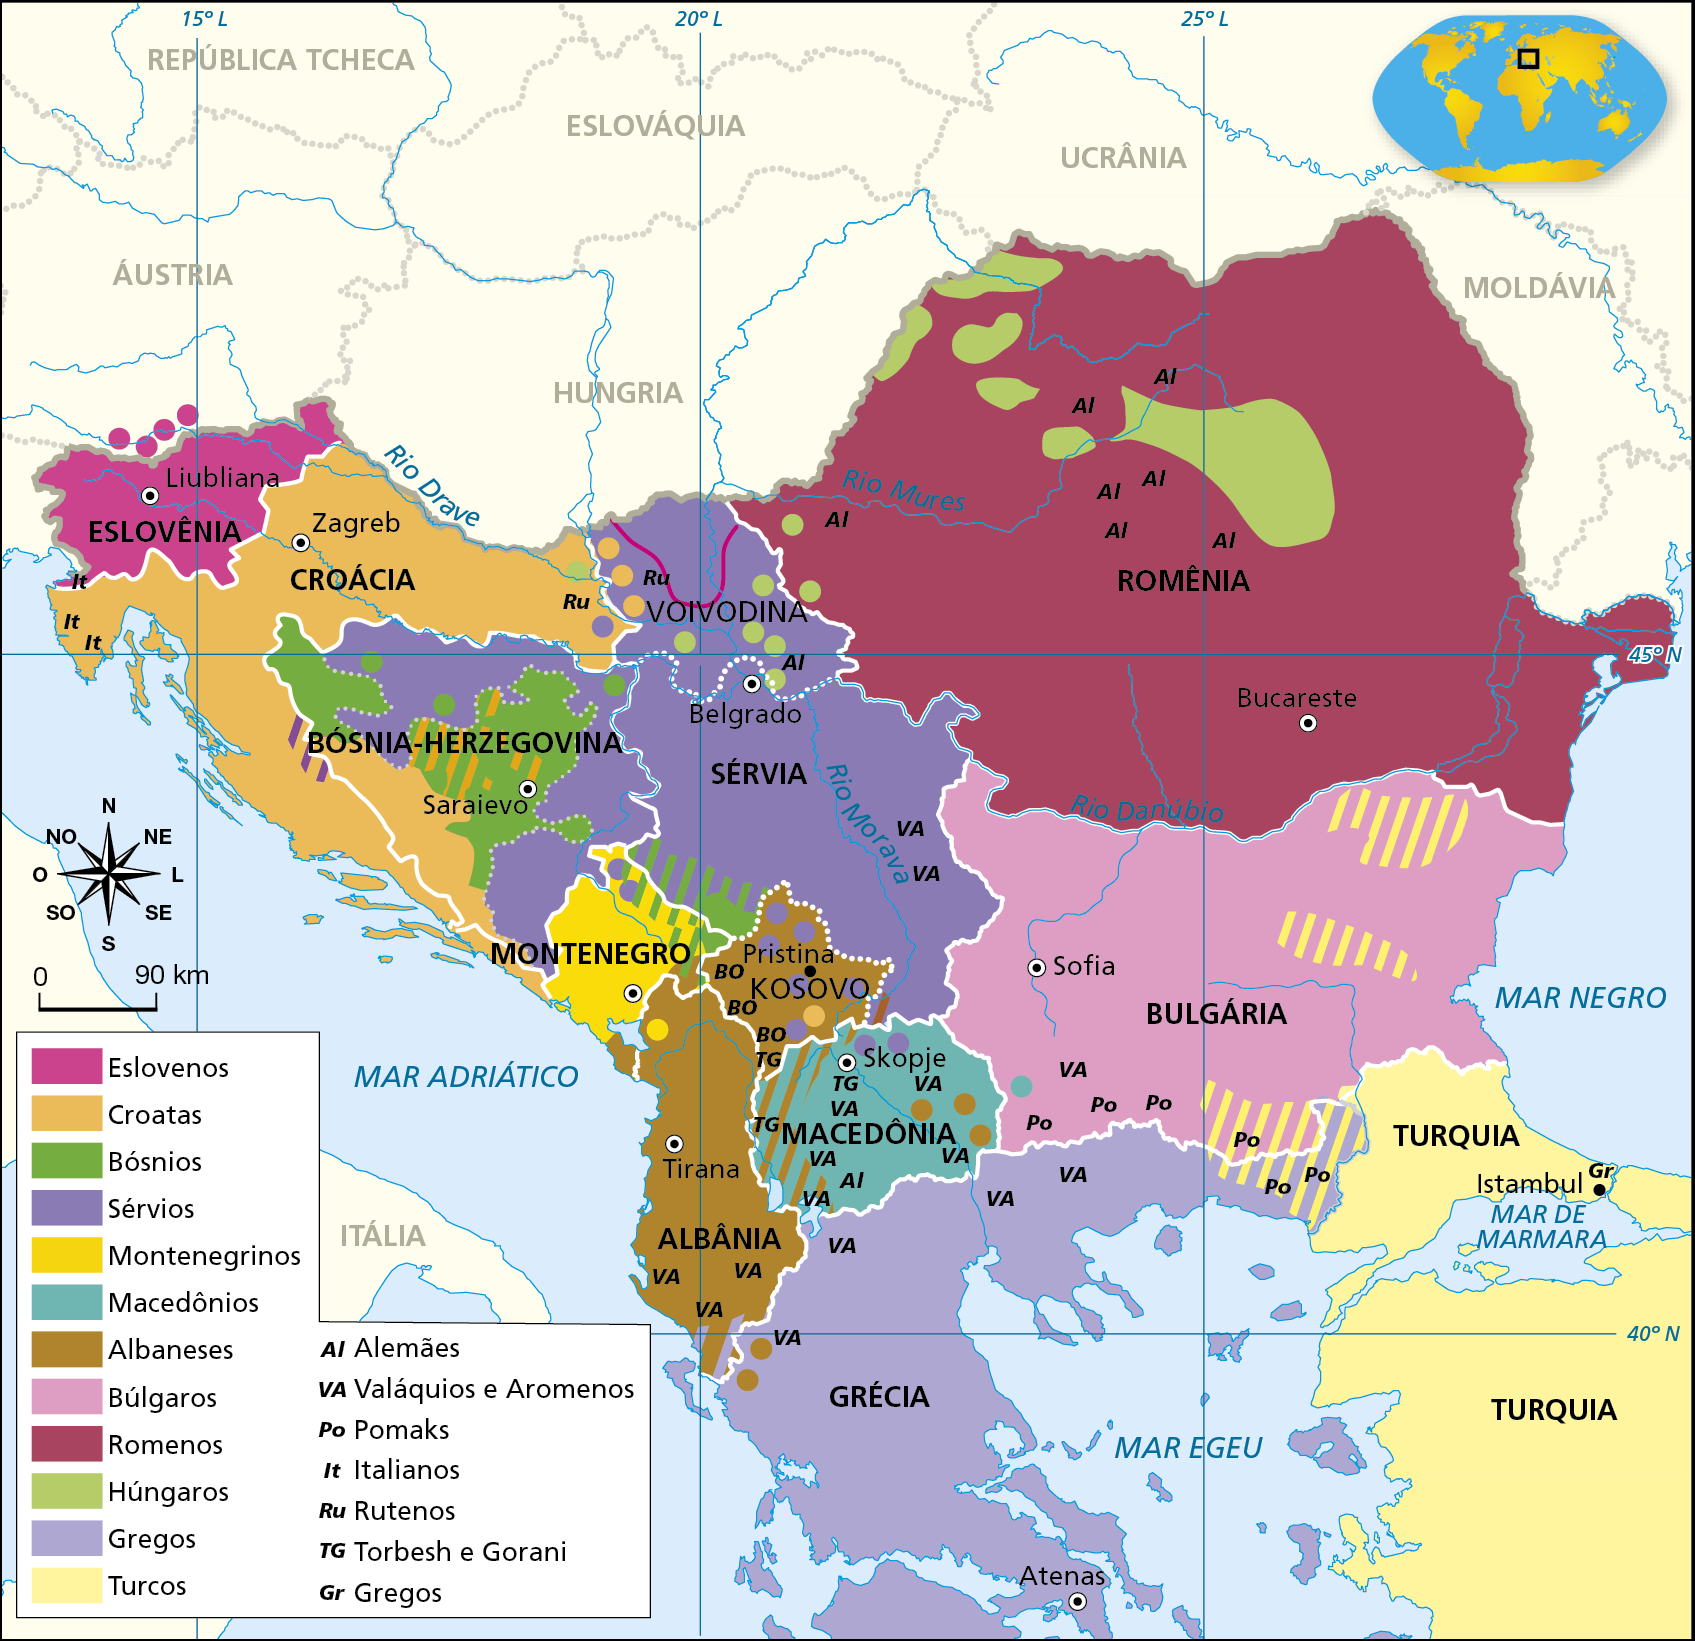 Mapa. Ex-Iugoslávia: redistribuição étnica. Mapa das região dos Bálcãs destacando etnias existentes nos países da região e nos países oriundos da dissolução da Iugoslávia. Eslovenos: predominantemente na Eslovênia. Croatas: predominantes na Croácia; porção oeste da Bósnia-Herzegovina; ponto no noroeste da Sérvia; sul do Kosovo. Bósnios: região central, noroeste e sudeste da Bósnia-Herzegovina; sudoeste da Sérvia. Sérvios: predominantes na Sérvia; no leste, sul e norte da Bósnia-Herzegovina; pontos do norte da Macedônia e pontos espalhados pelo Kosovo. Montenegrinos: predominantes em Montenegro; norte da Albânia. Macedônios: predominantes na Macedônia; sudoeste da Bulgária. Albaneses: predominantes na Albânia e Kosovo; áreas do oeste e leste da Macedônia. Búlgaros: predominantes na Bulgária. Romenos: predominantes na Romênia. Húngaros: áreas do centro e noroeste da Romênia; áreas do norte da Sérvia. Gregos: predominantes na Grécia. Turcos: predominantes na Turquia; áreas do sul e leste da Bulgária e do nordeste da Grécia. Alemães (Al): região central e oeste da Romênia; norte da Sérvia. Valáquios e Aromenos (VA): leste da Sérvia; sul da Albânia; pontos espalhados pela Macedônia; noroeste da Bulgária; norte da Grécia. Pomaks (Po): sul da Bulgária, nordeste da Grécia. Italianos (It): oeste da Croácia. Rutenos (Ru): leste da Croácia; oeste da Sérvia. Torbesh e Gorani (TG): sul de Kosovo; norte da Macedônia. Gregos (Gr): norte da Turquia (Istambul). À esquerda, rosa dos ventos e escala de 0 a 90 quilômetros.